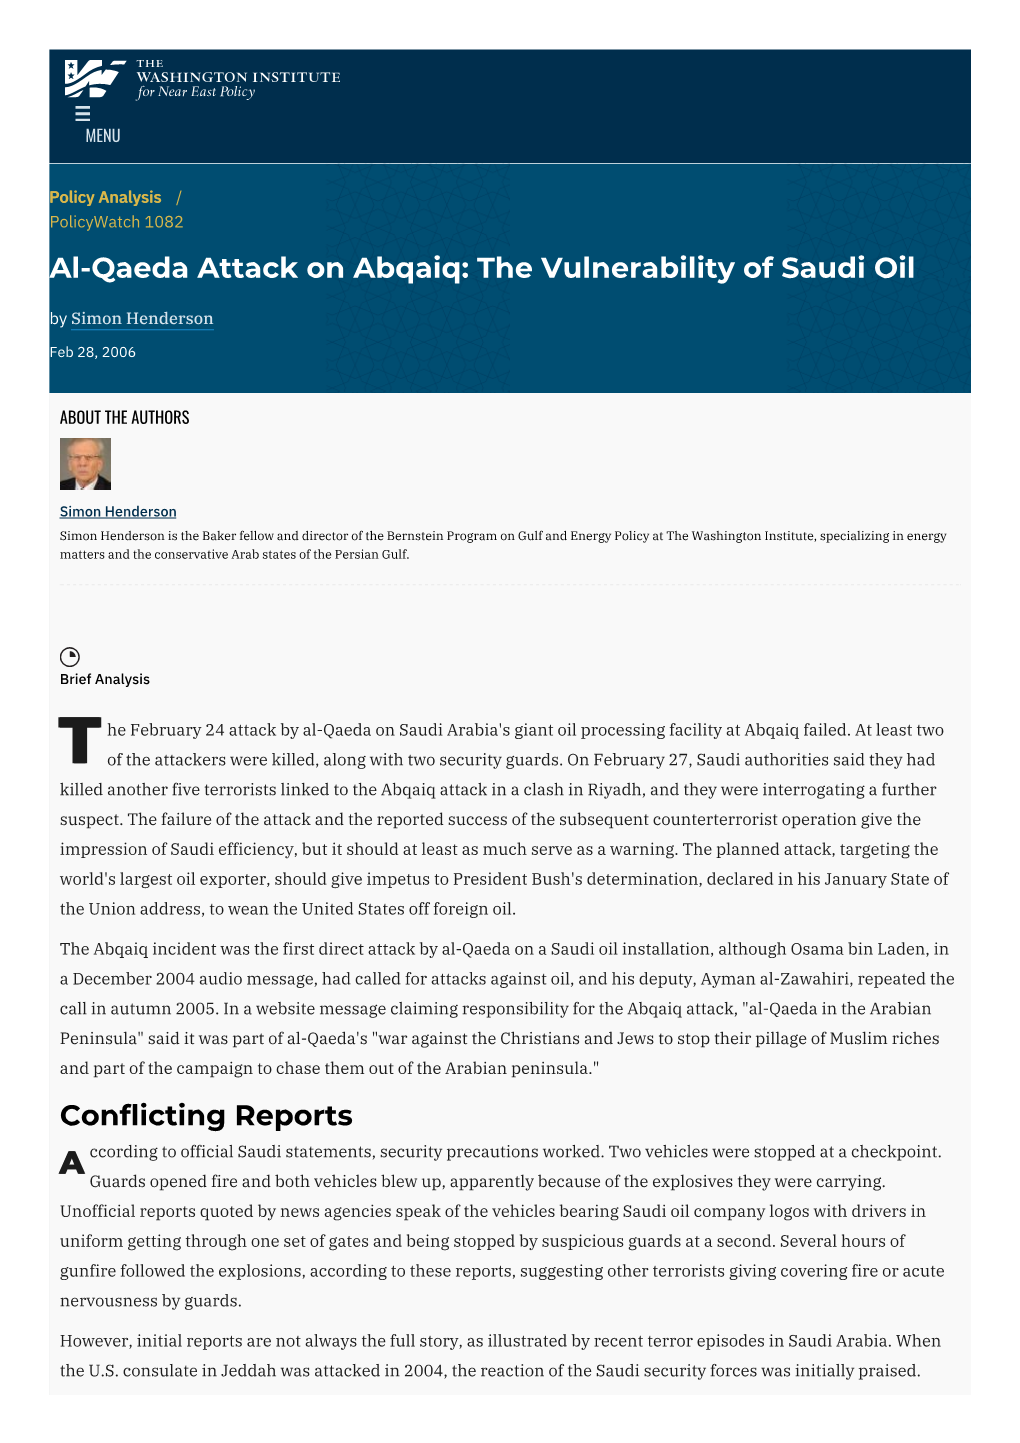 Al-Qaeda Attack on Abqaiq: the Vulnerability of Saudi Oil by Simon Henderson